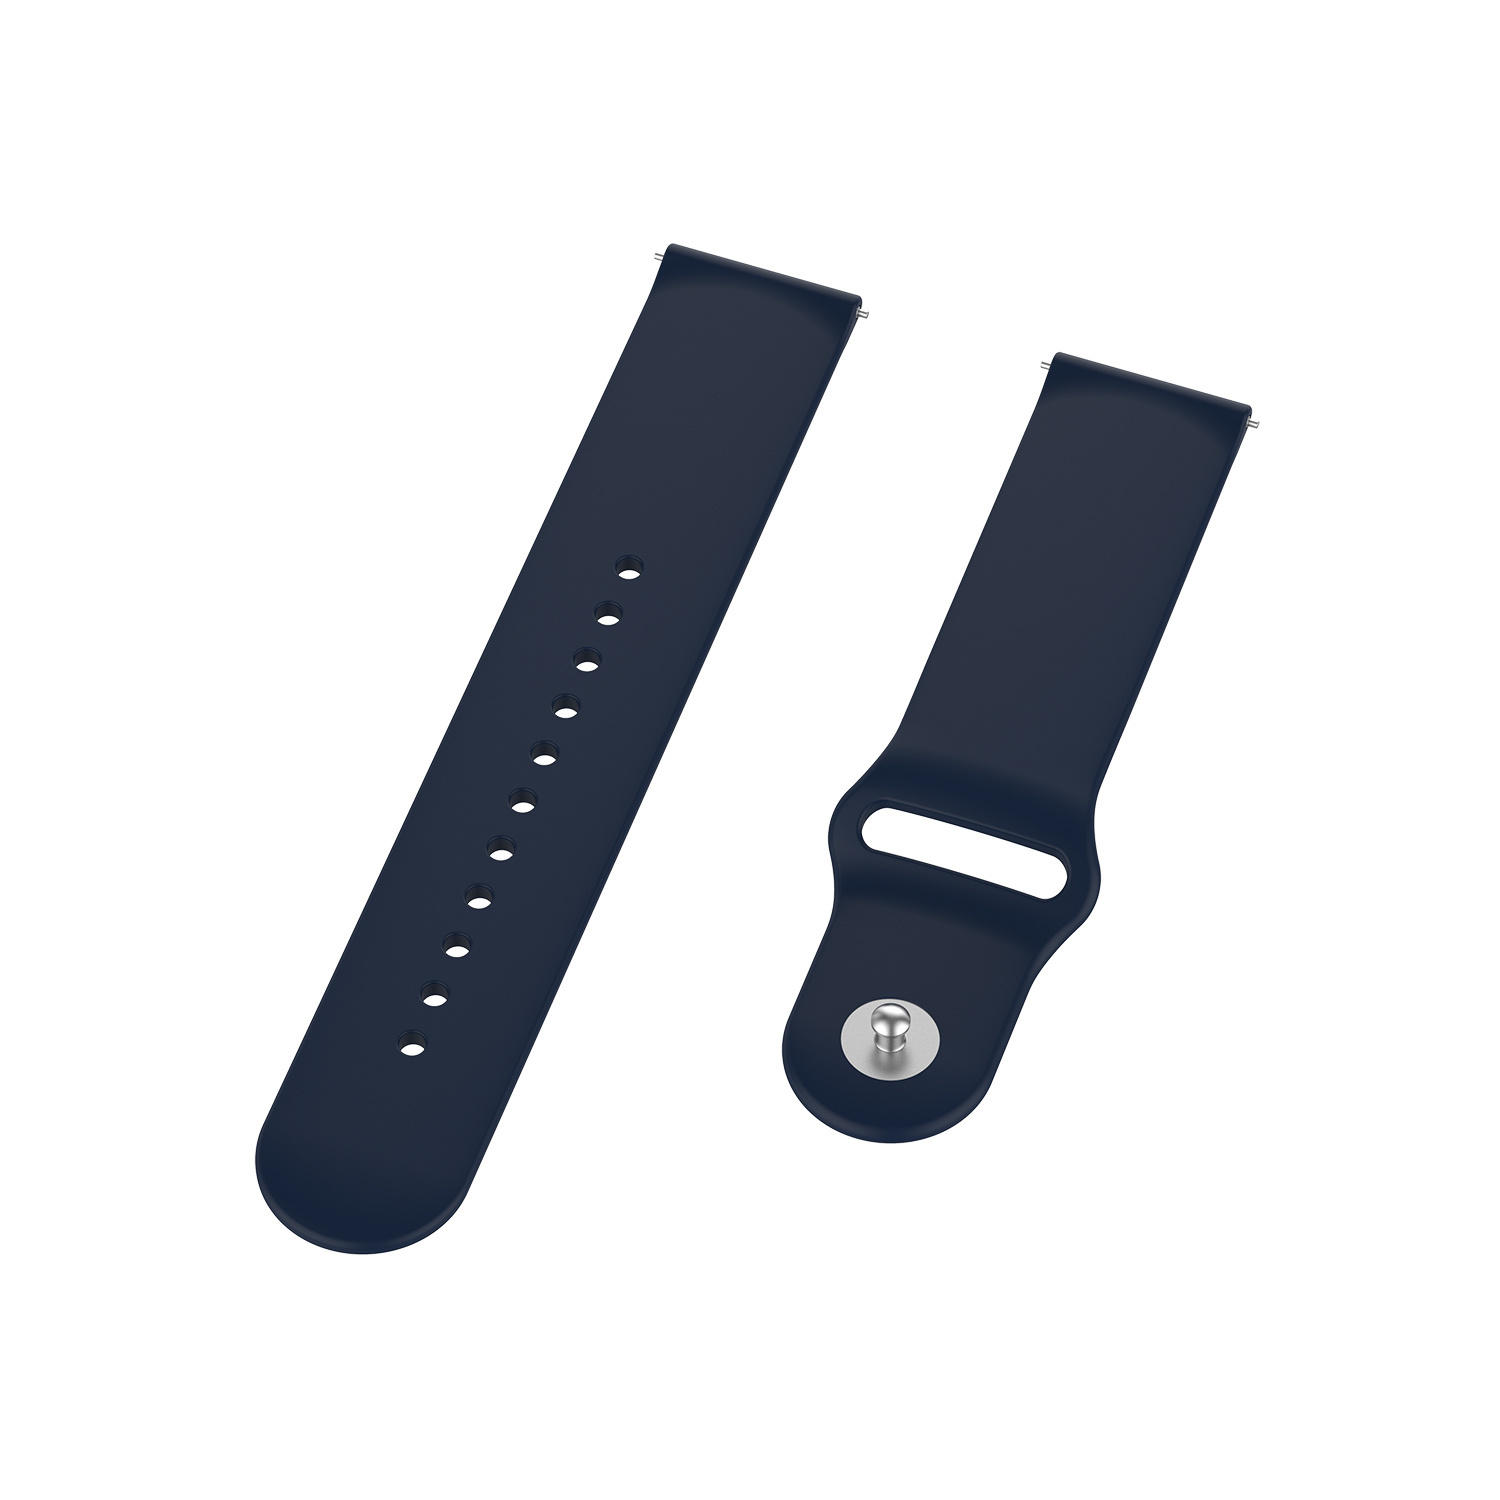 Bracelet sport en silicone Huawei Watch GT - bleu marine